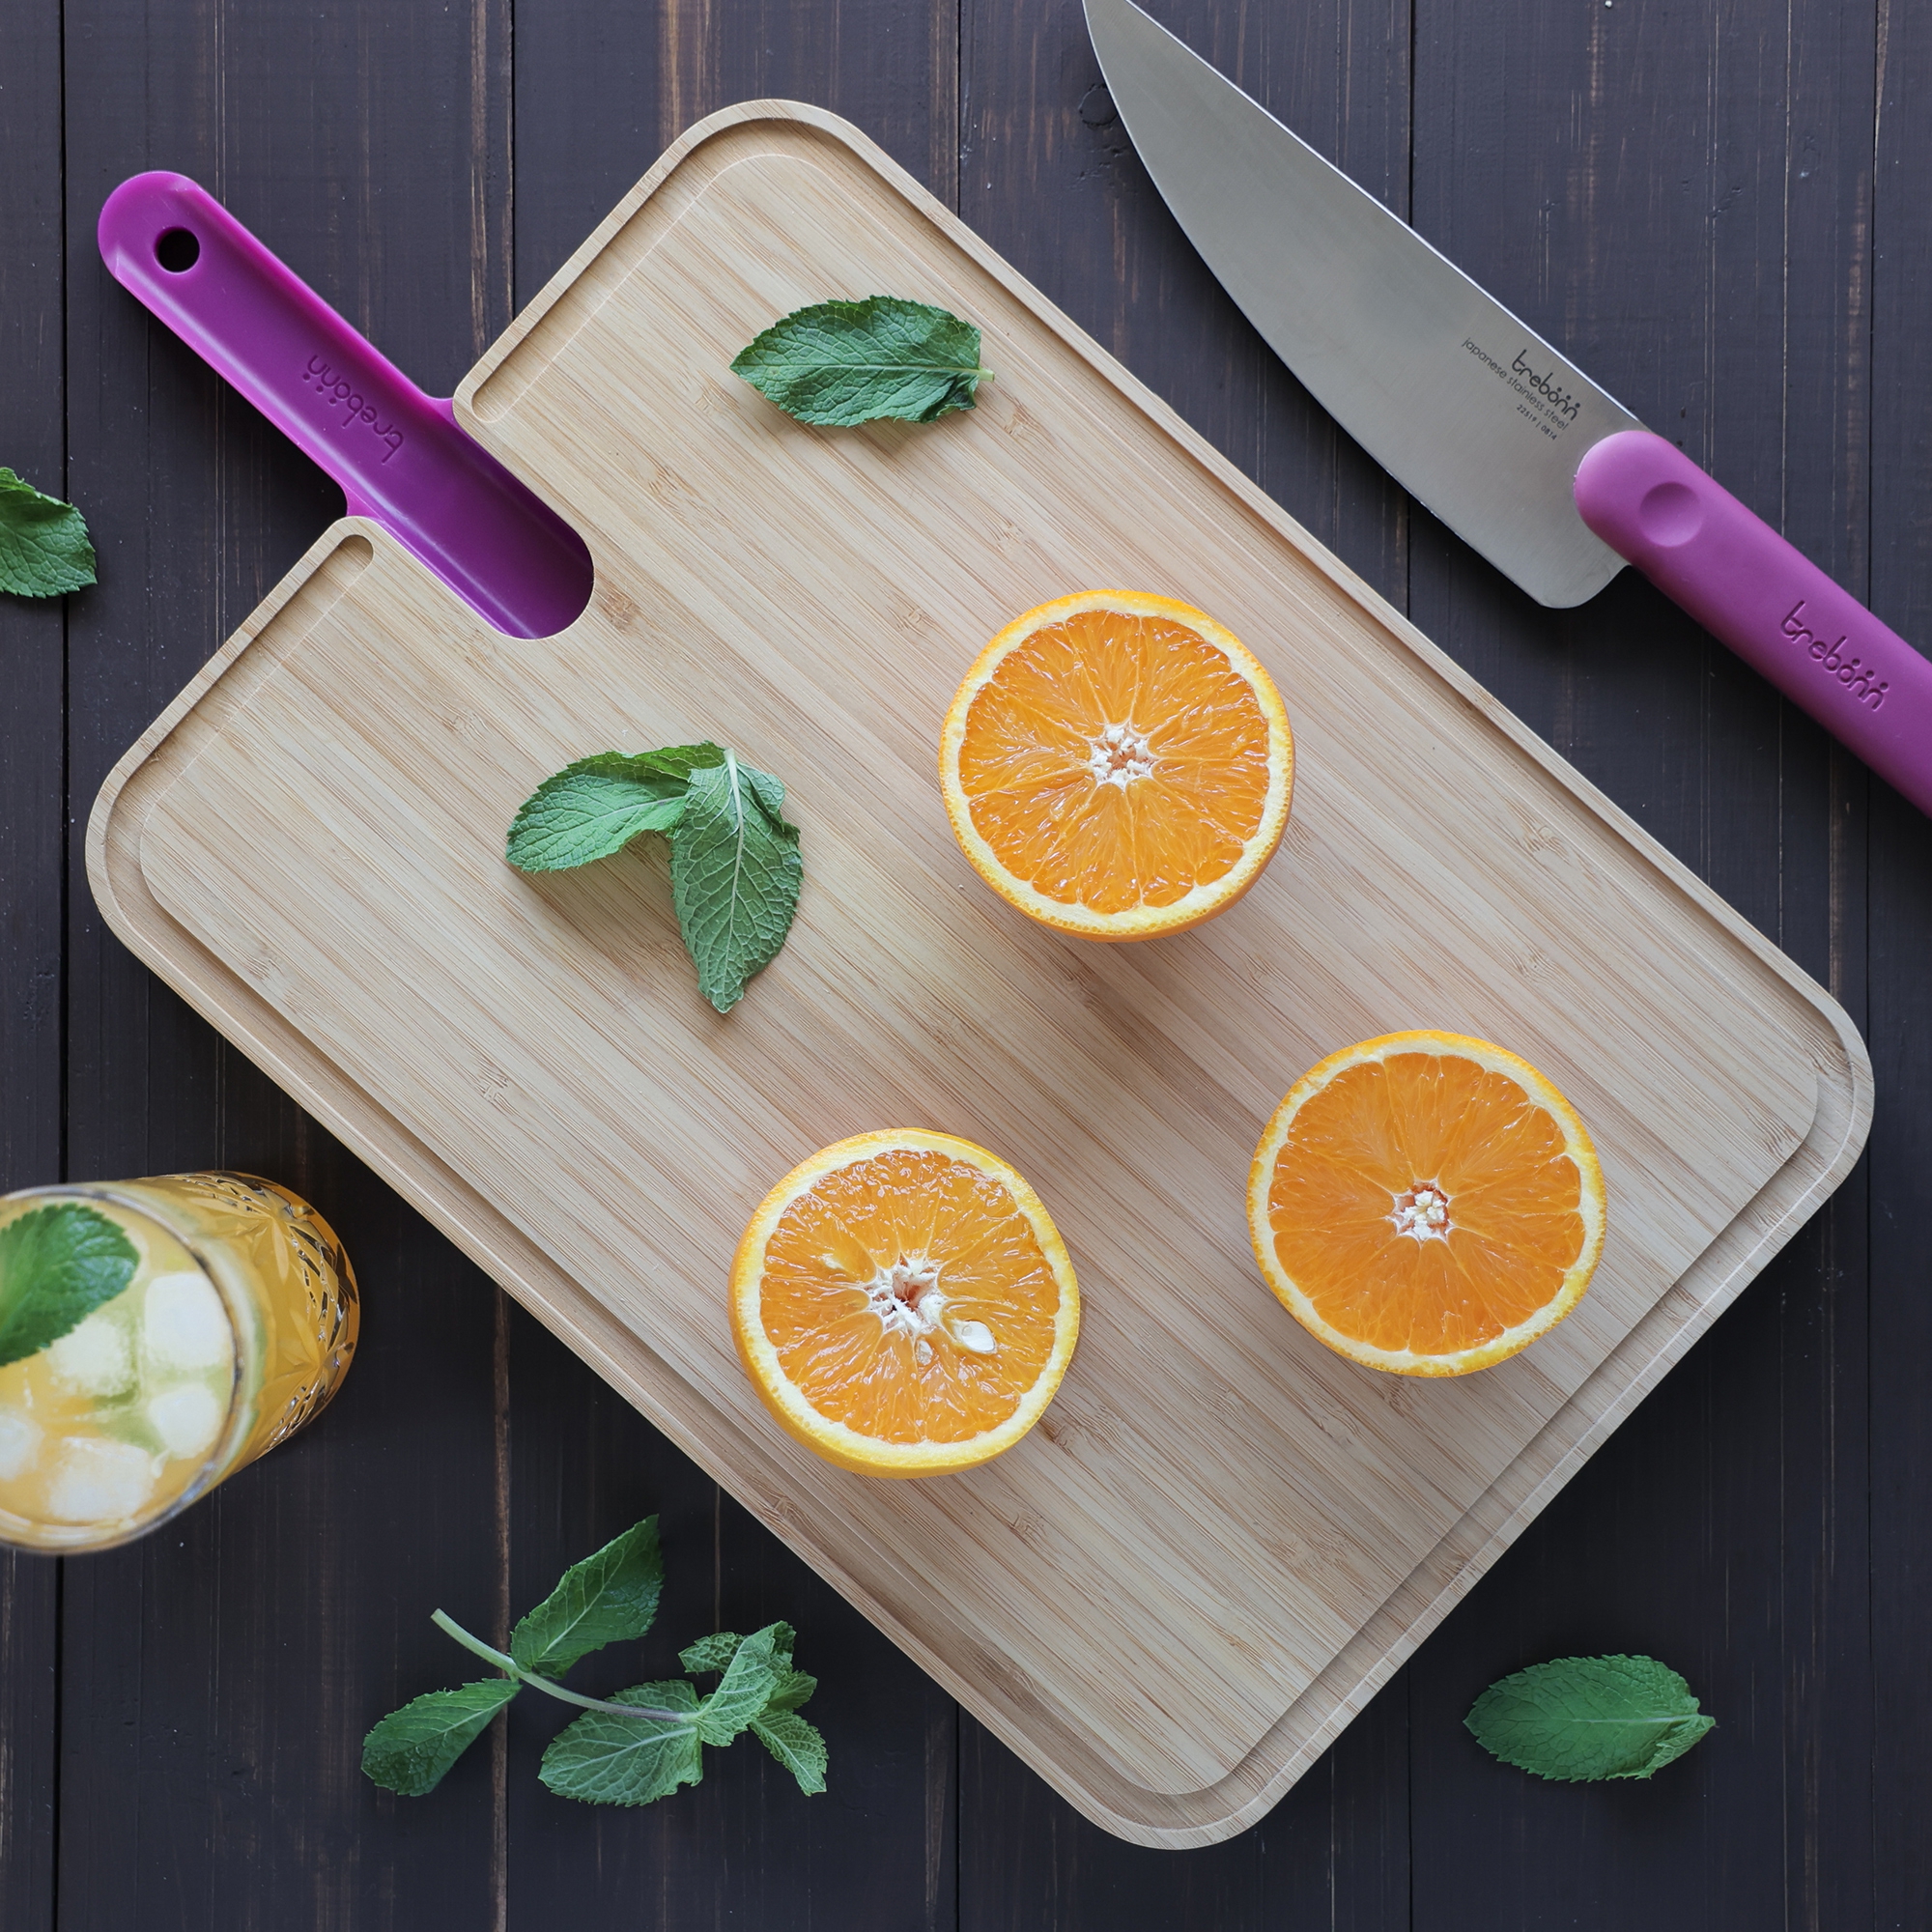 Trebonn - ARTU cutting board + chef's knife